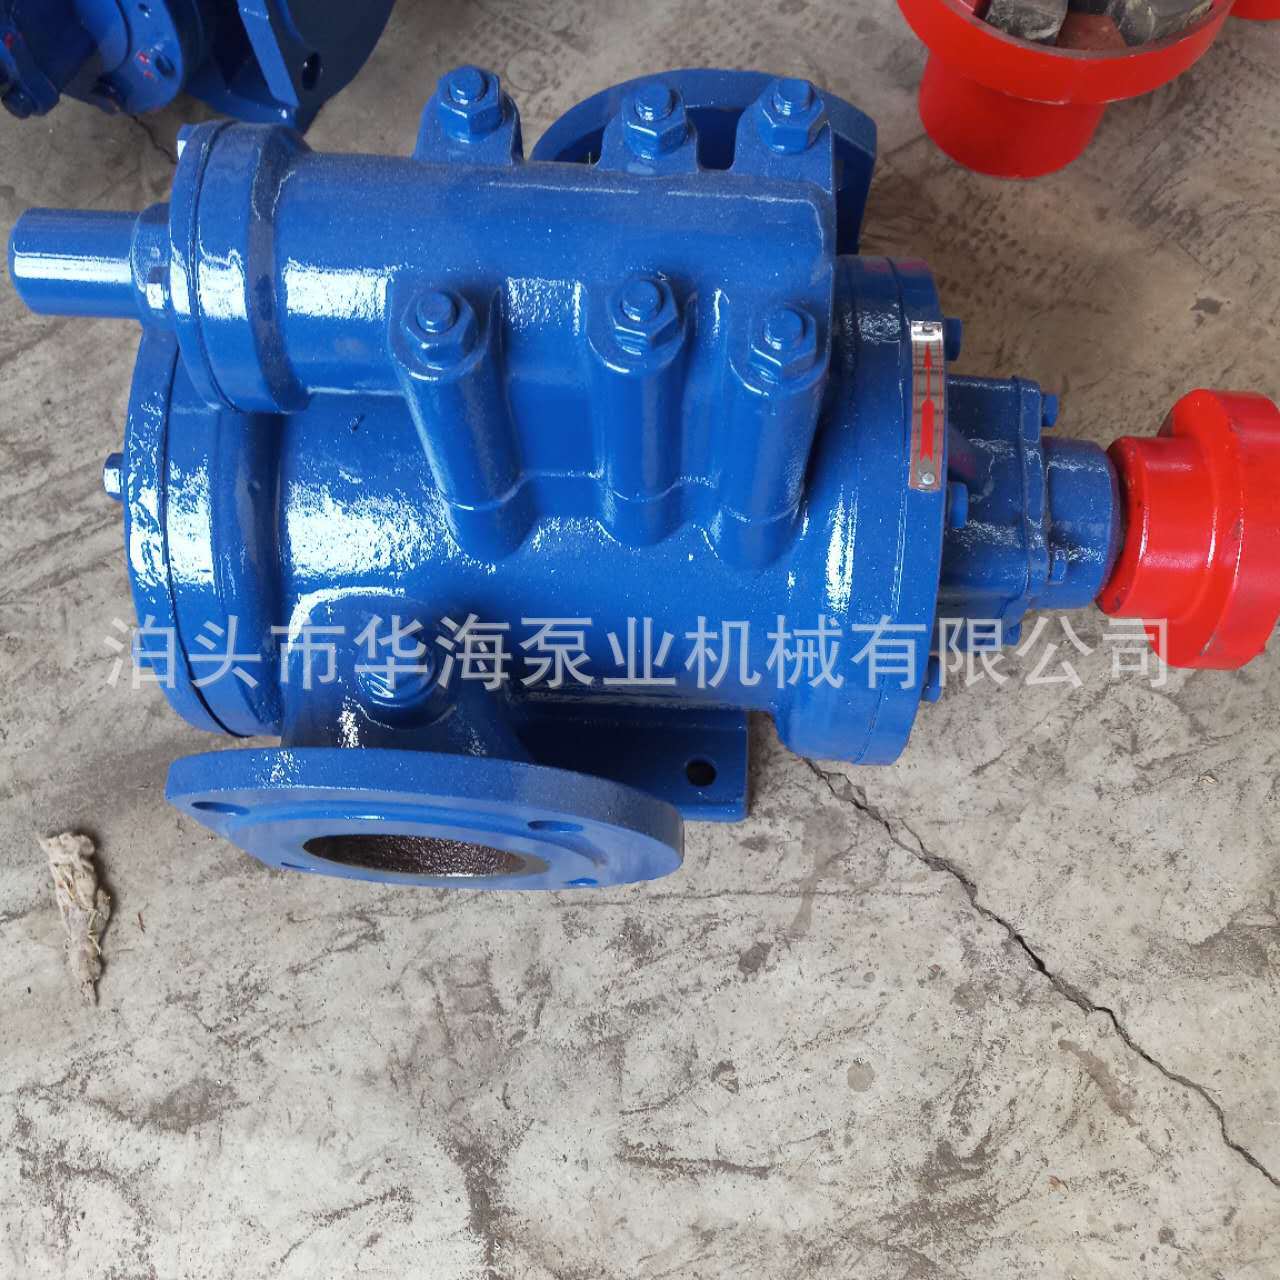 厂家直销高品质3G25*4-46系列螺杆式输送泵 滤油机螺杆泵示例图6